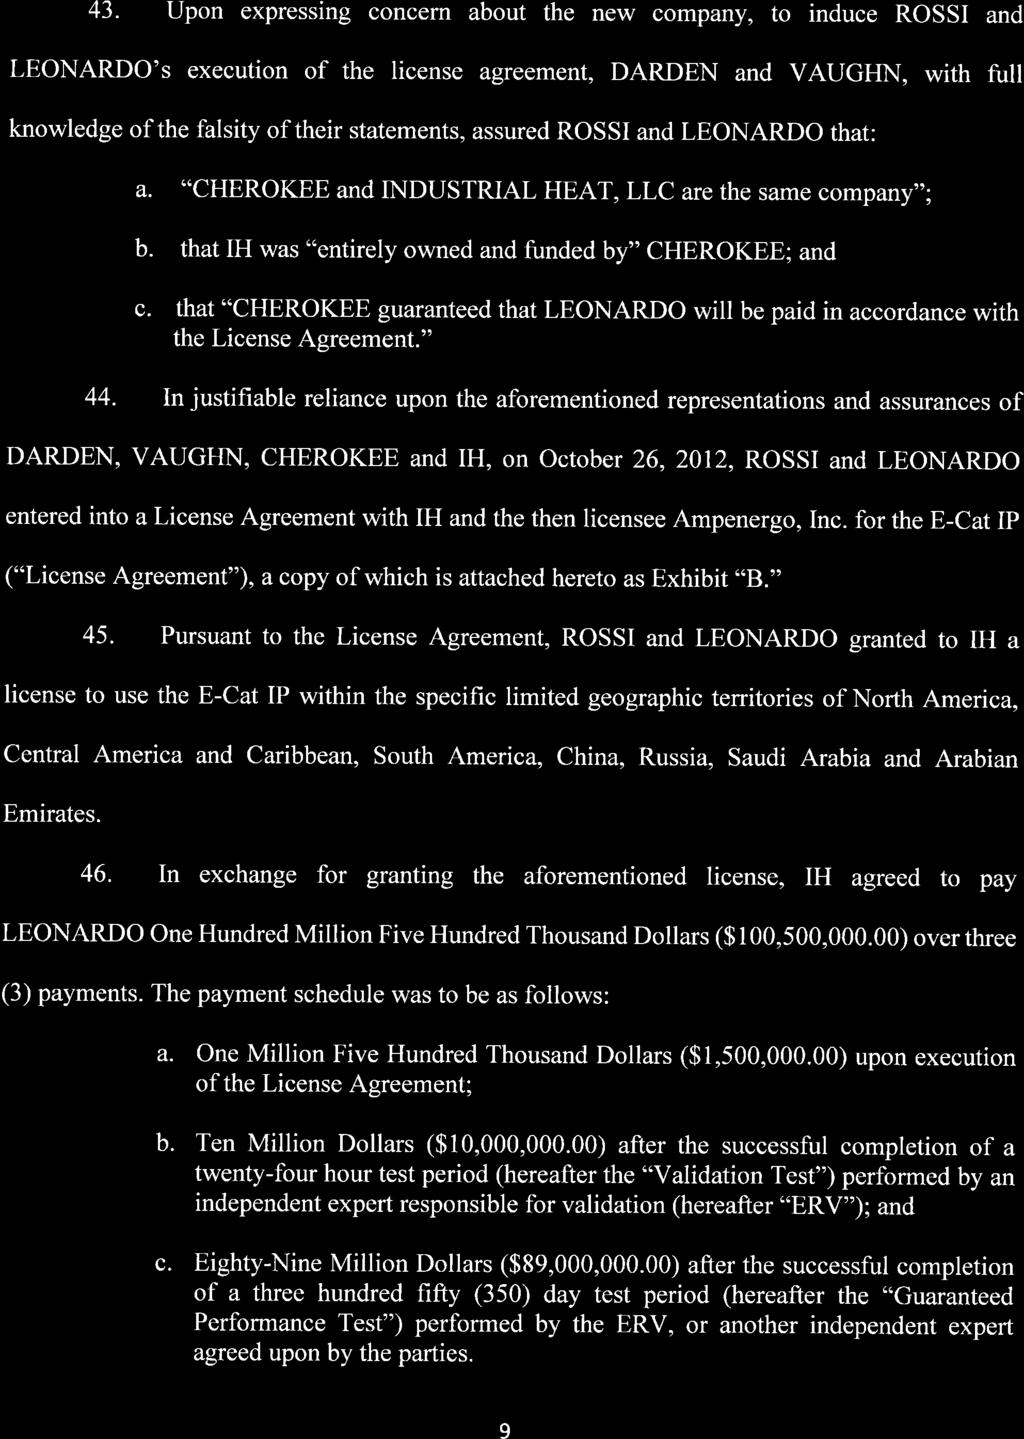 Case 1:16-cv-21199-CMA Document 1 Entered on FLSD Docket 04/05/2016 Page 9 of 27 43.